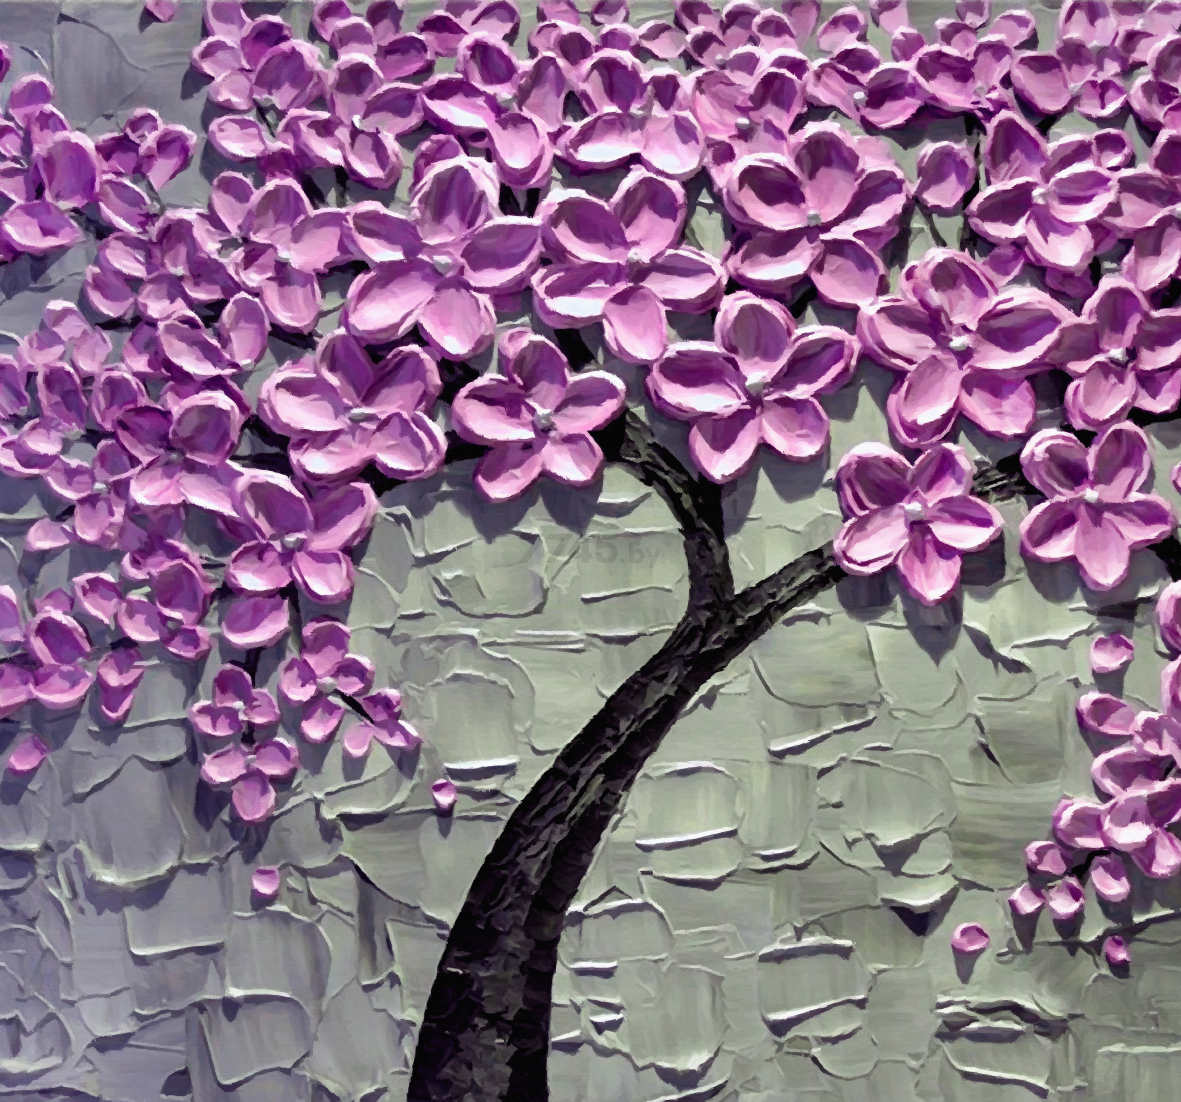 Фотообои флизелиновые ФАБРИКА ФРЕСОК Фиолетовое дерево 300x280 см (163280)